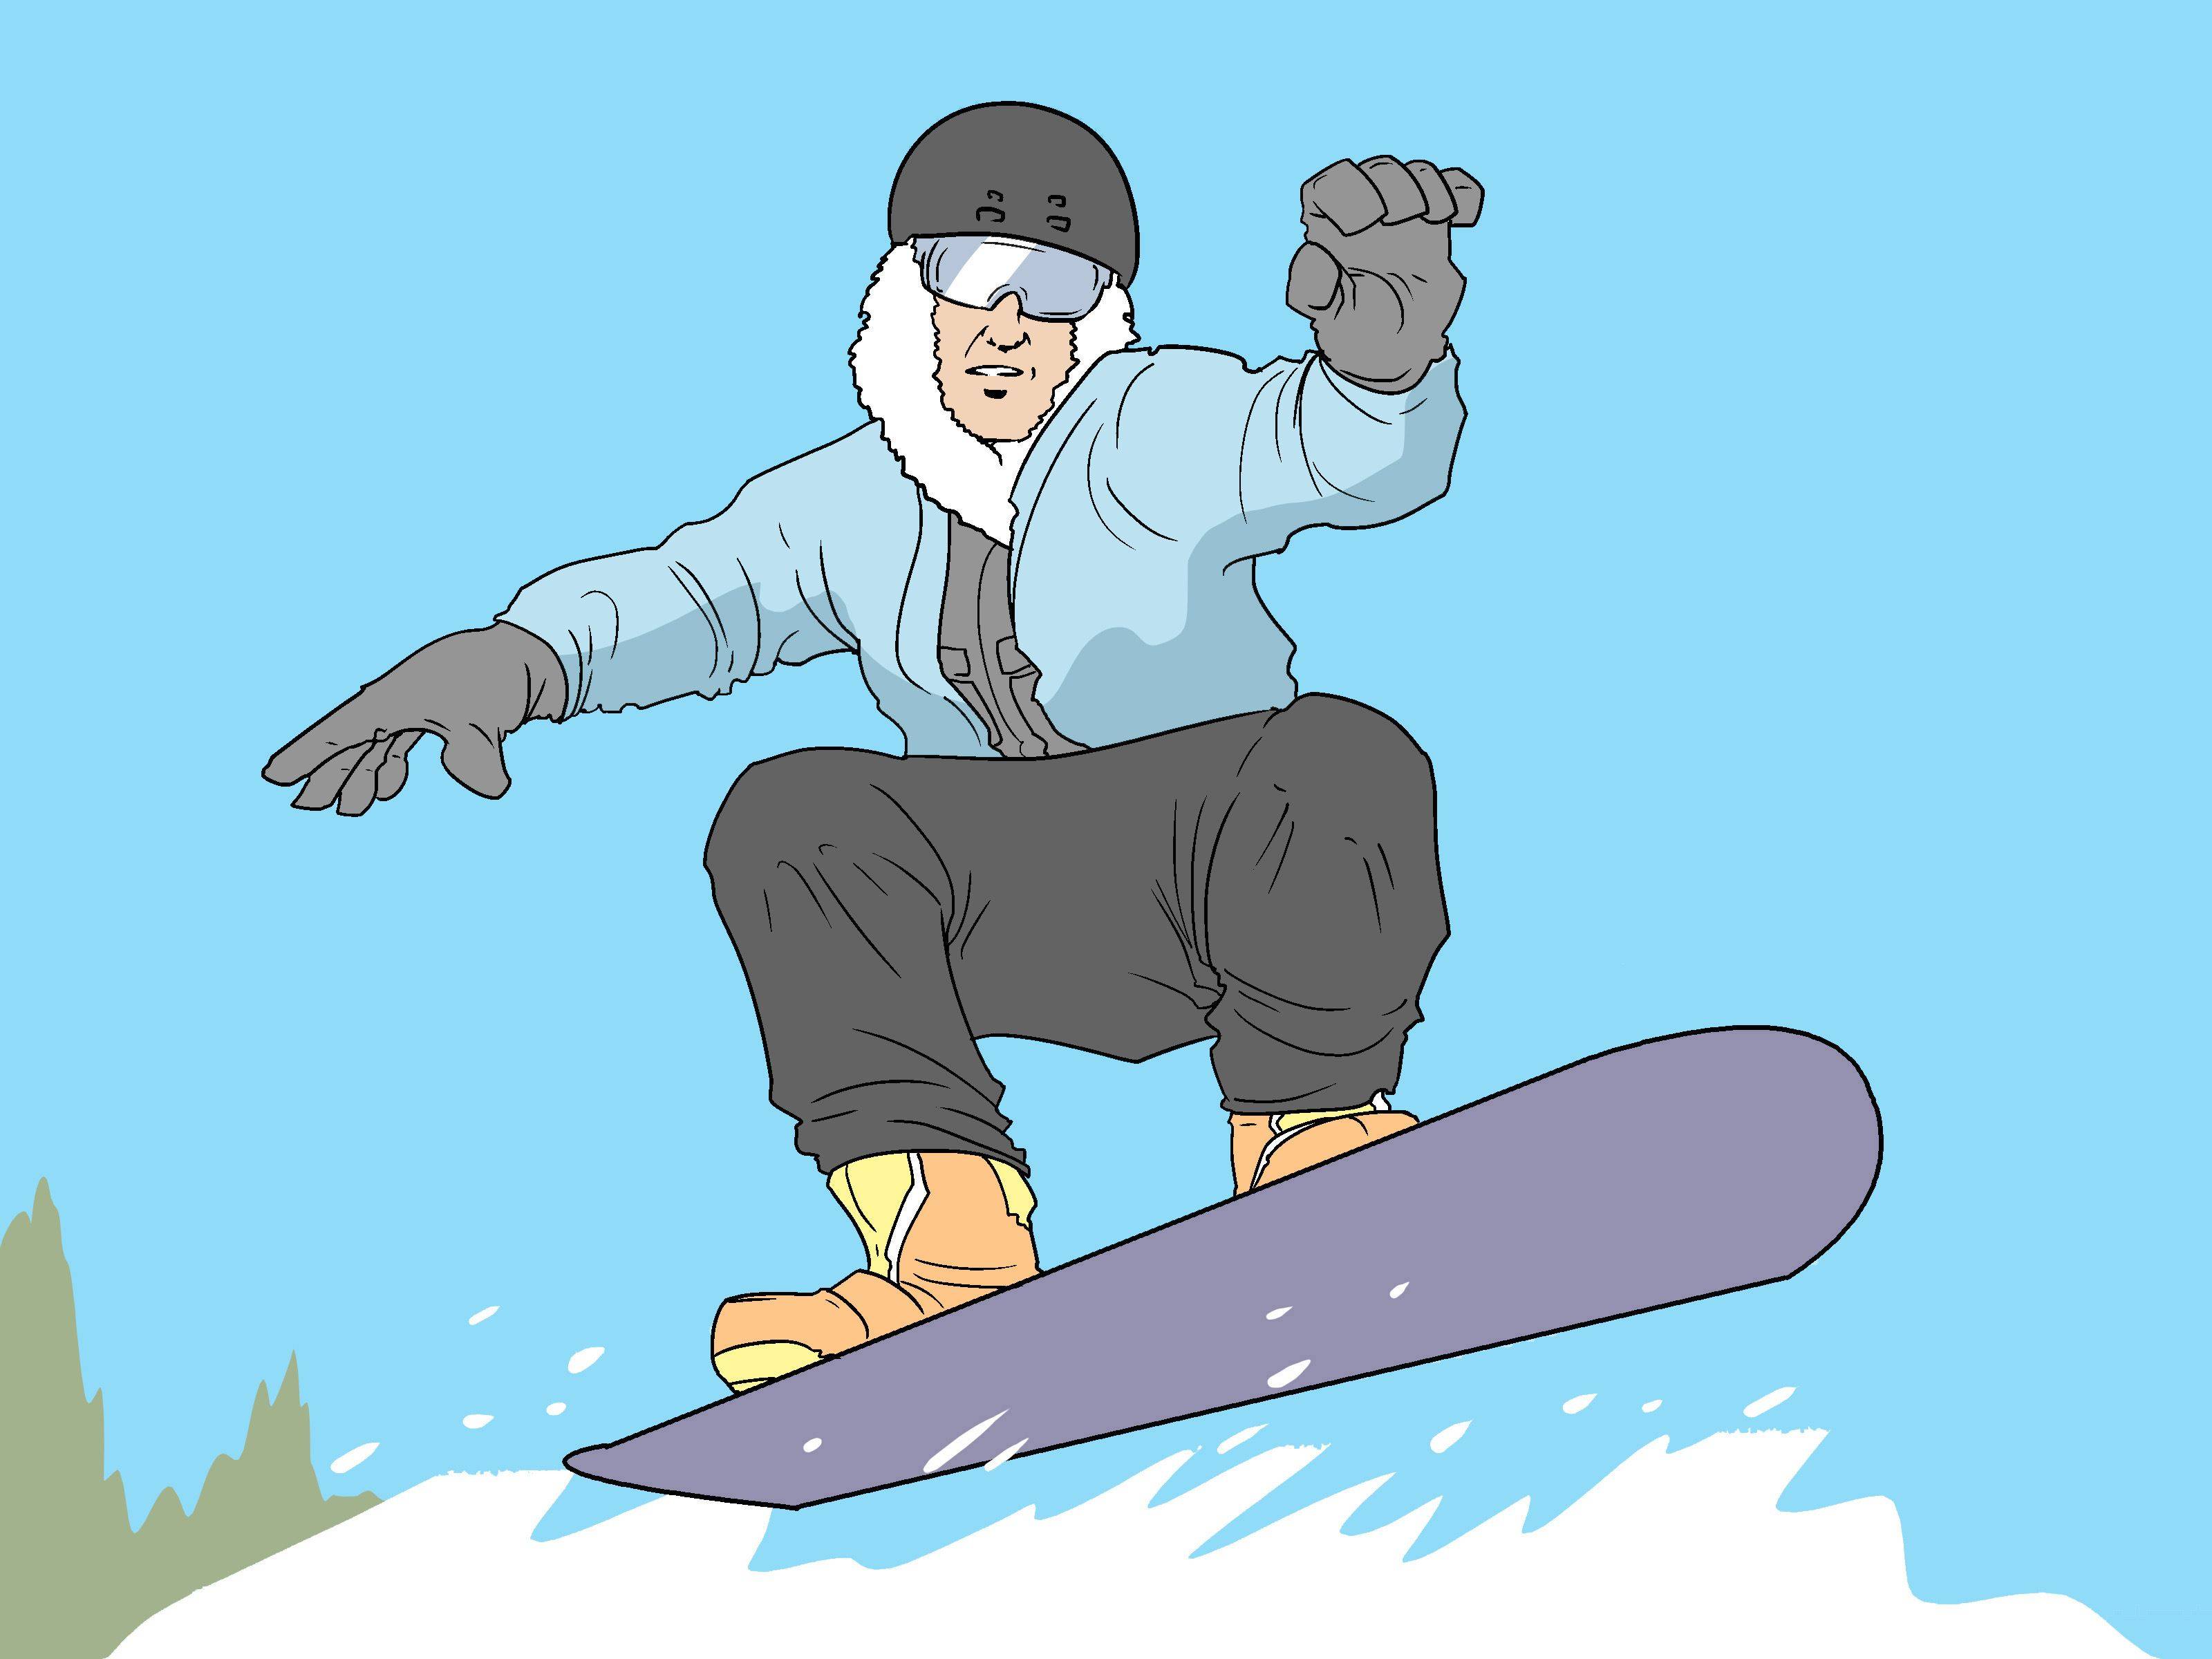 Сноубординг: описание, история, правила, виды